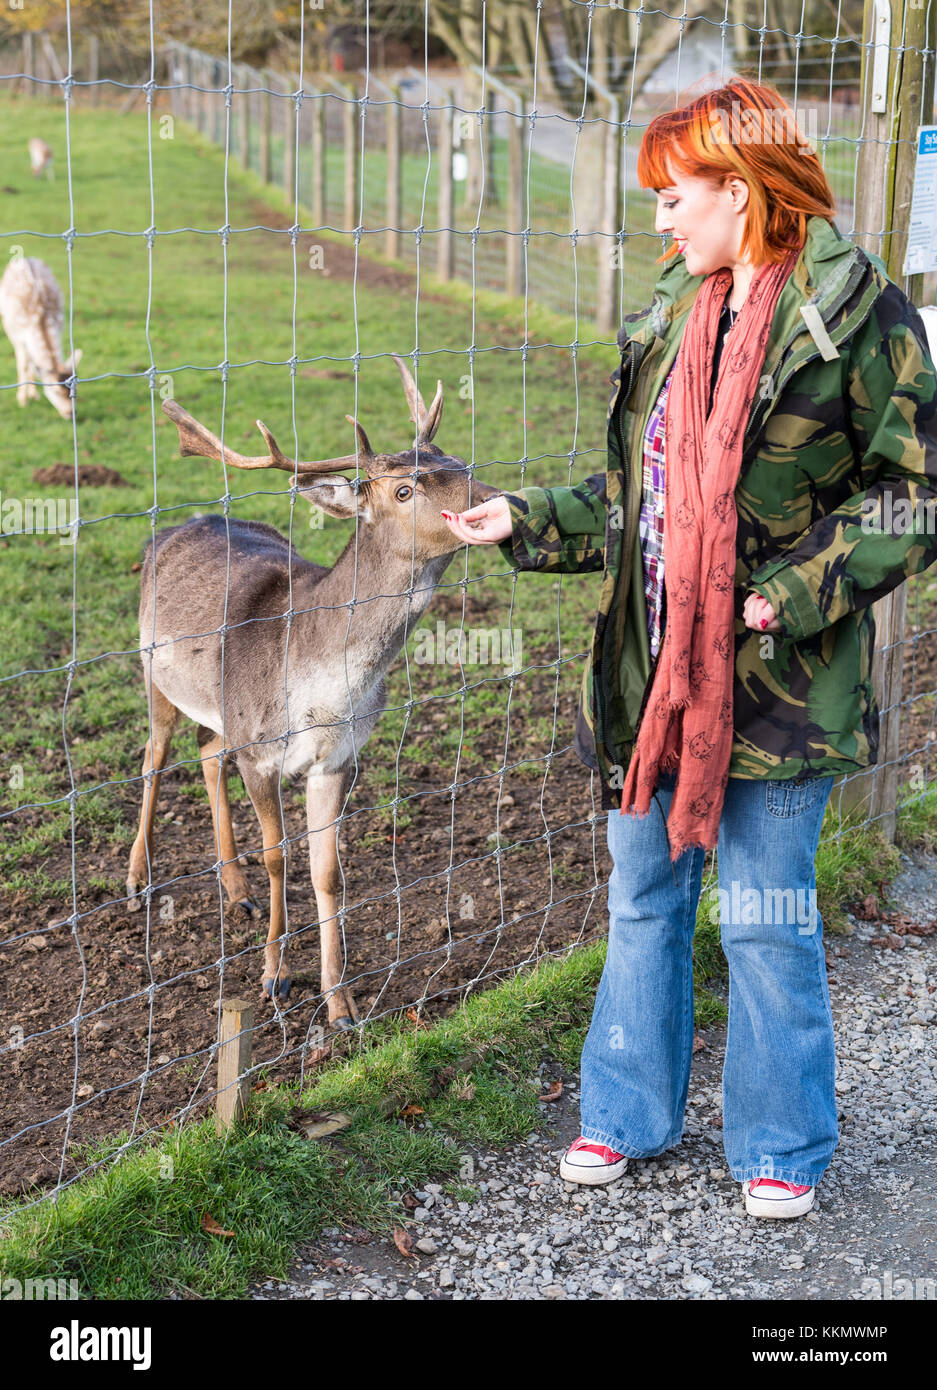 Girl in park in autumn feeds deer Stock Photo